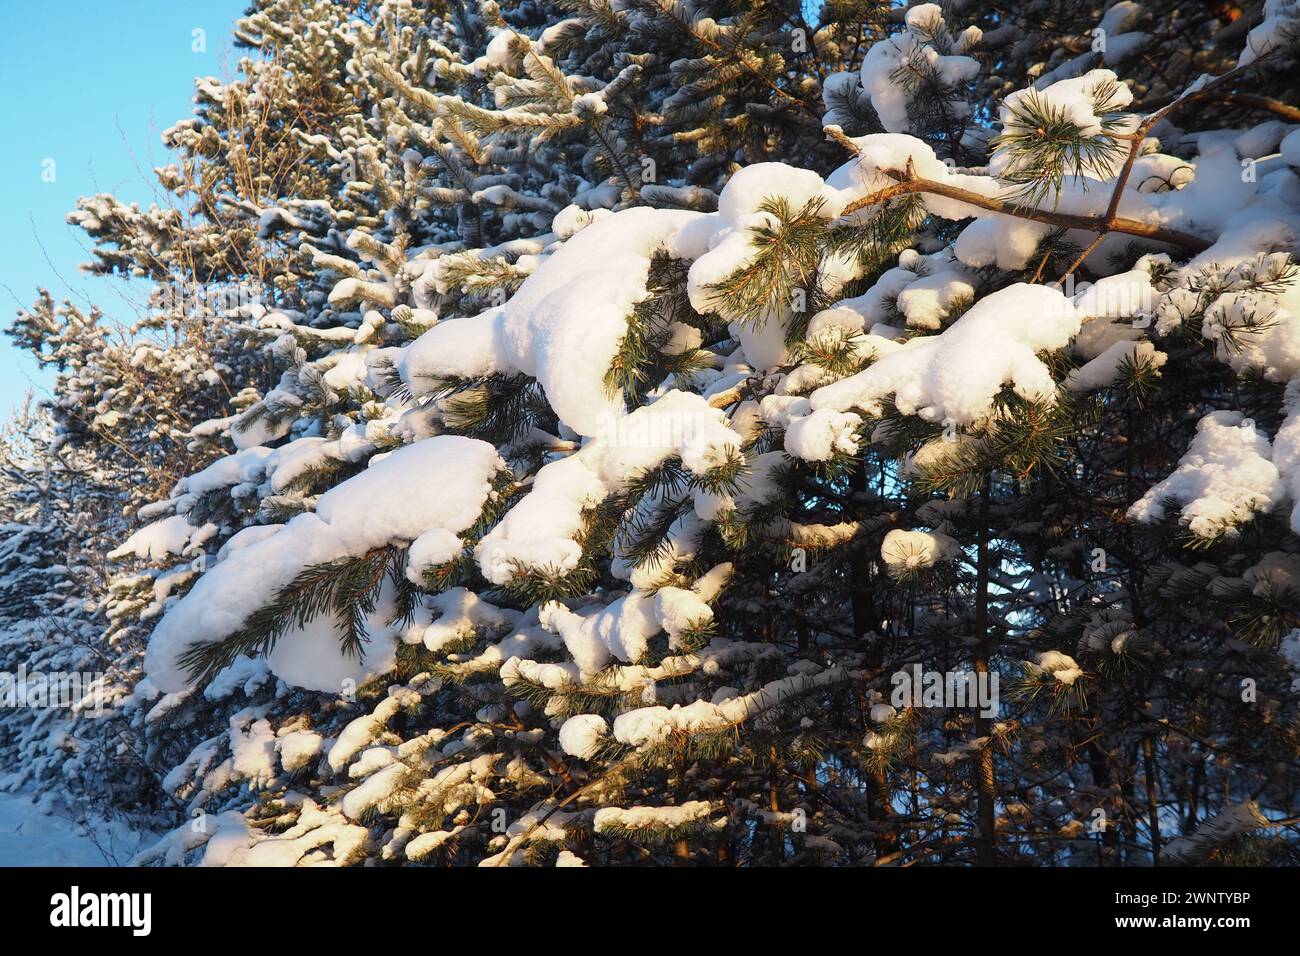 Forêt de pins en hiver pendant la journée en cas de gel sévère, Carélie. Neige sur les branches de conifères. Anticyclone par temps ensoleillé givré. Pinus pin sylvestre Banque D'Images